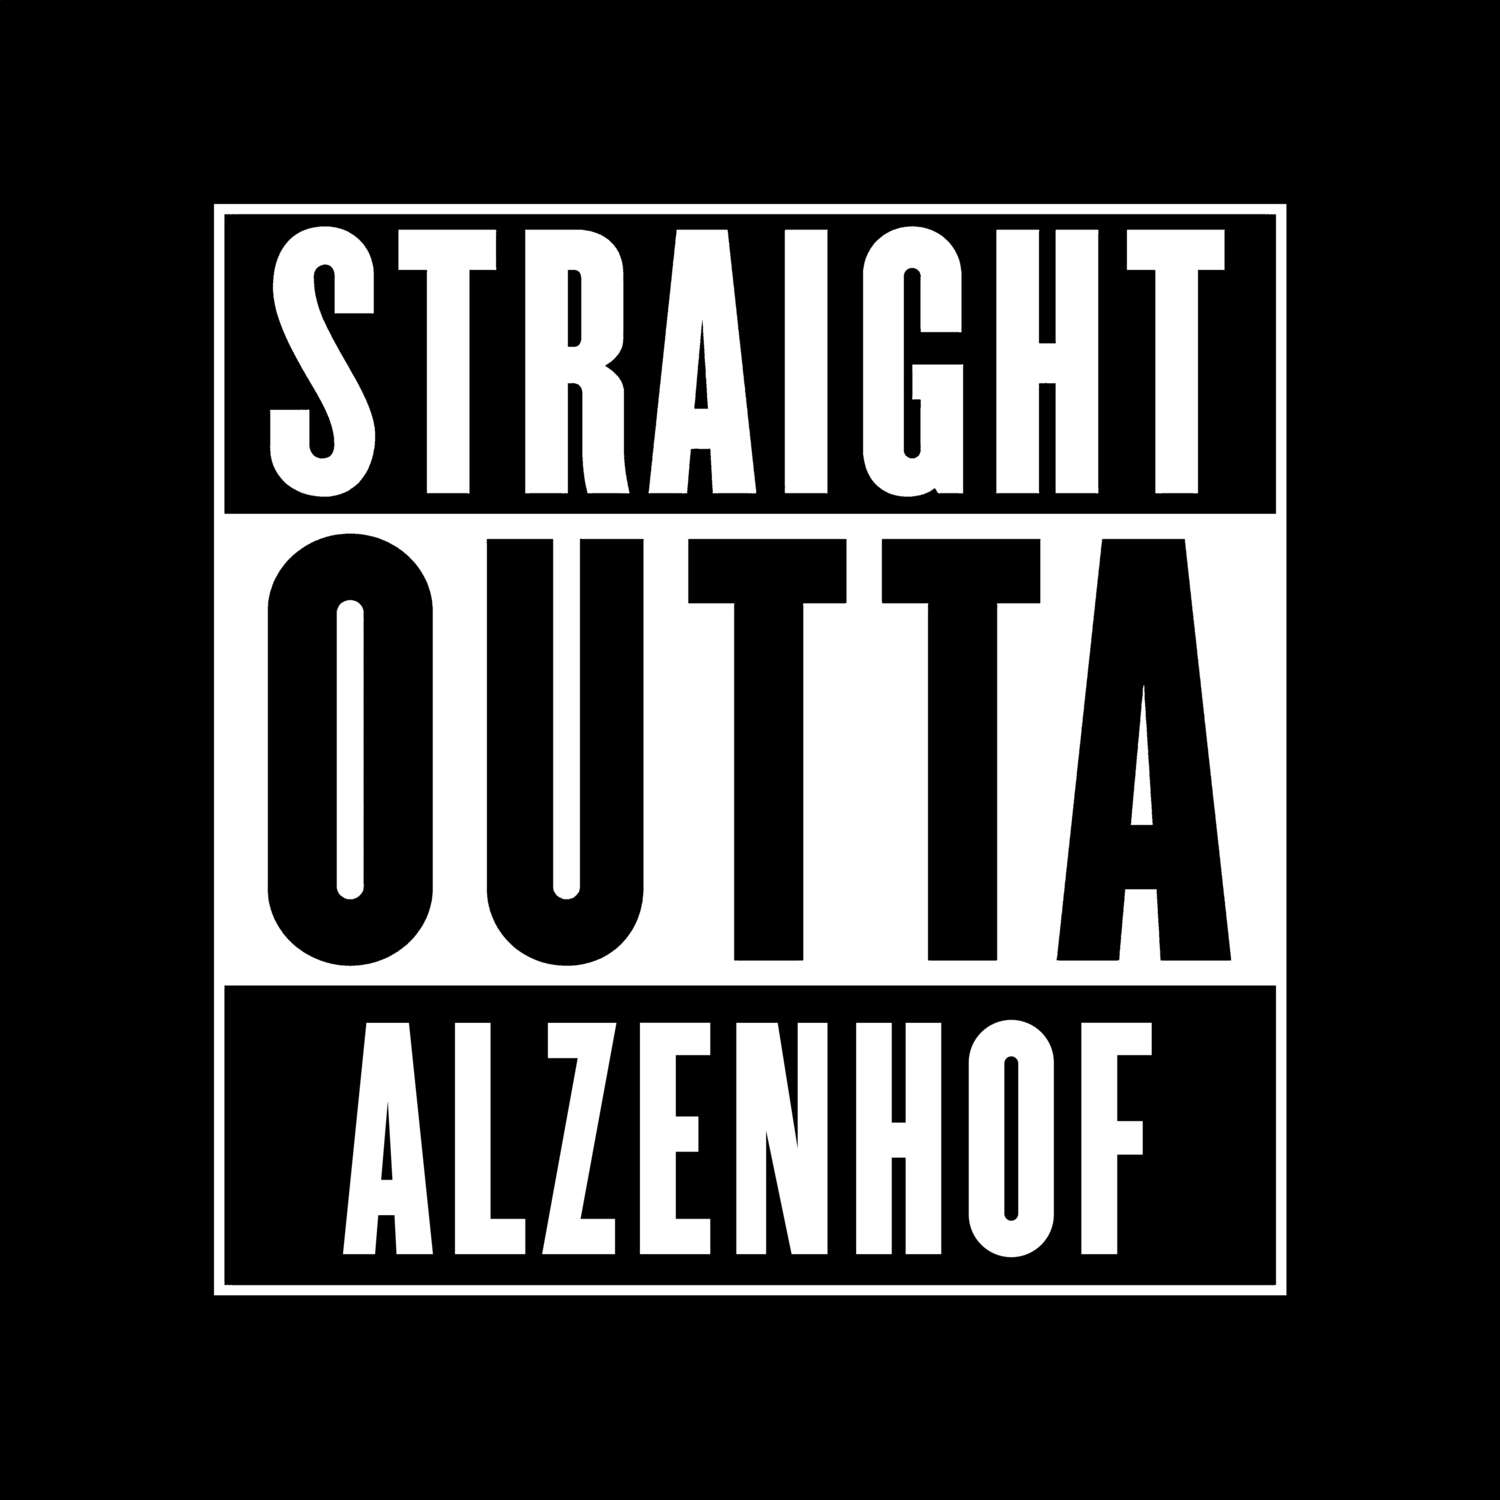 Alzenhof T-Shirt »Straight Outta«